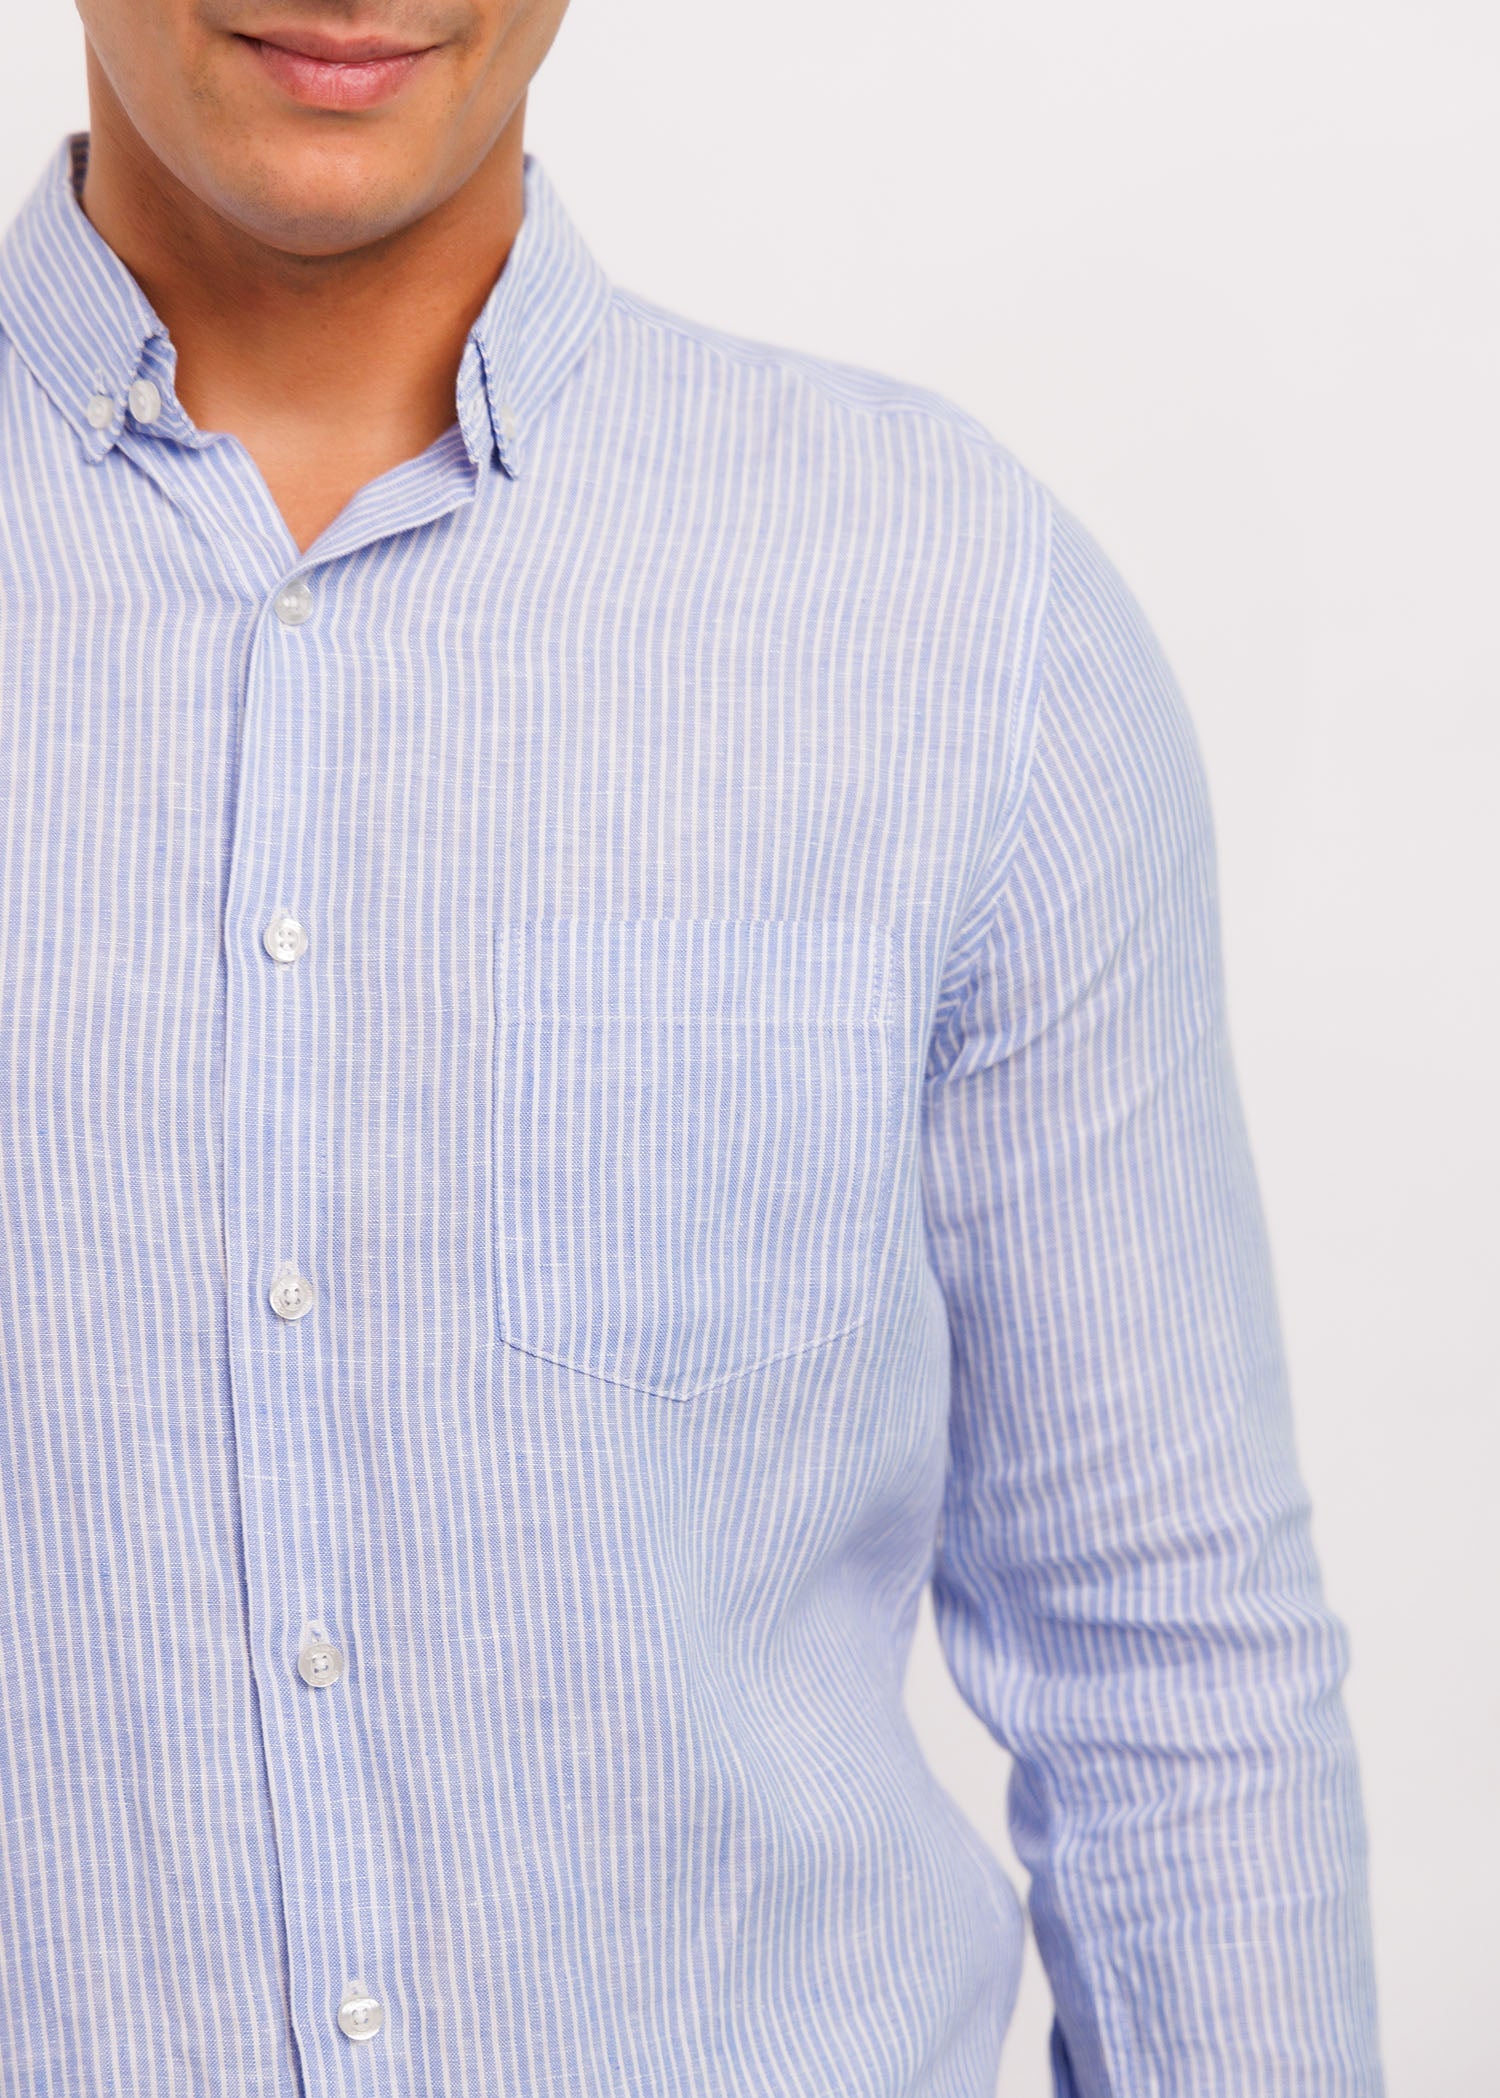 Casual Wear Stripe Linen L/S Shirt